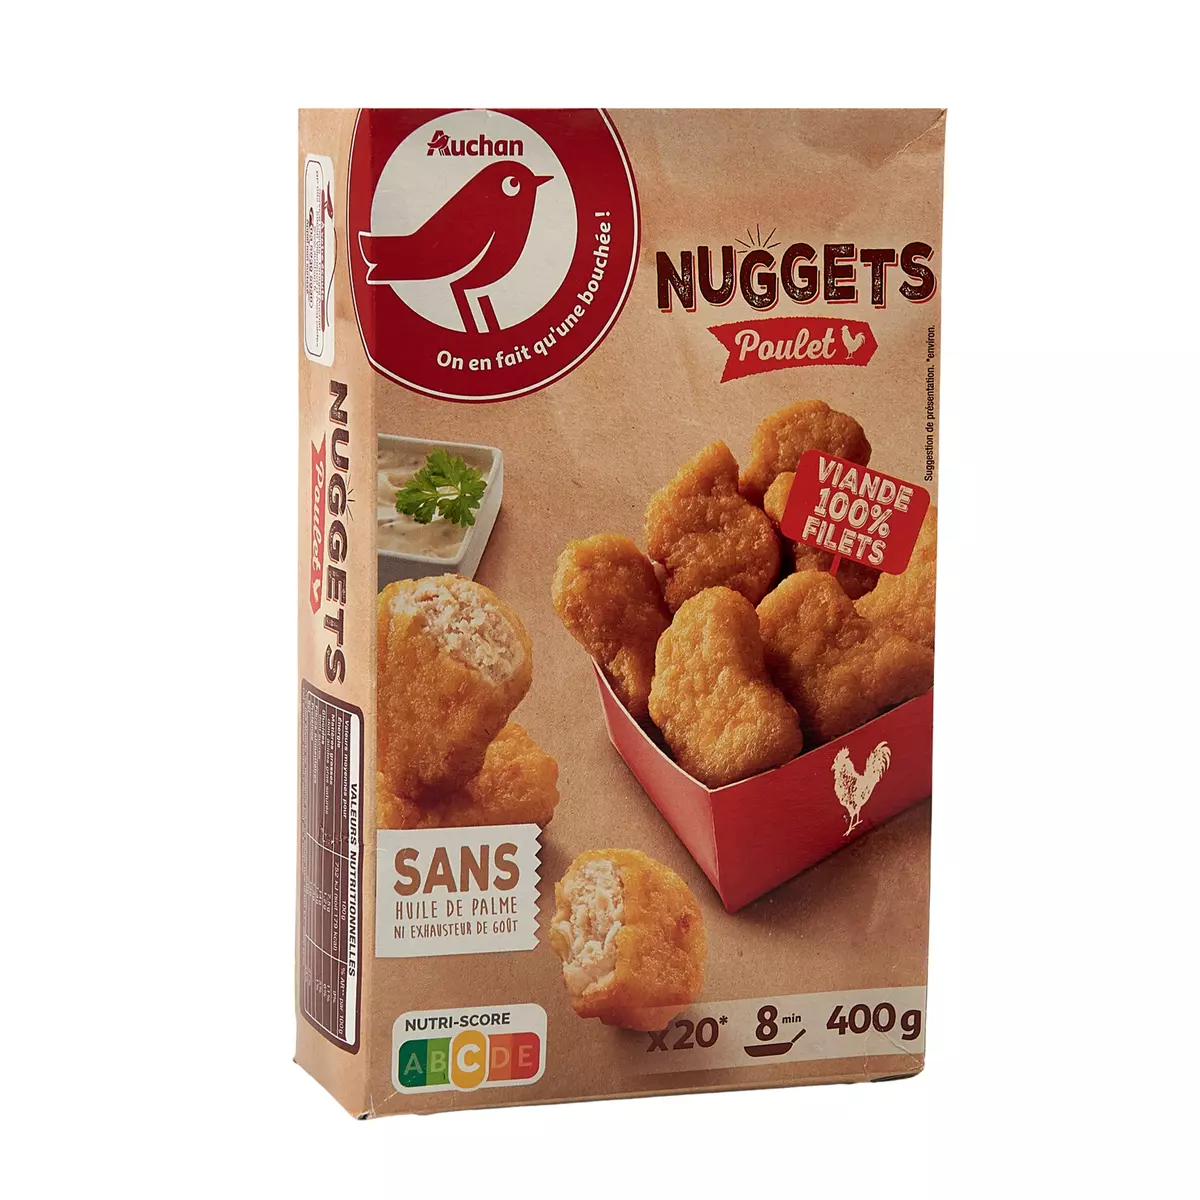 AUCHAN Nuggets de poulet 20 nuggets 400g